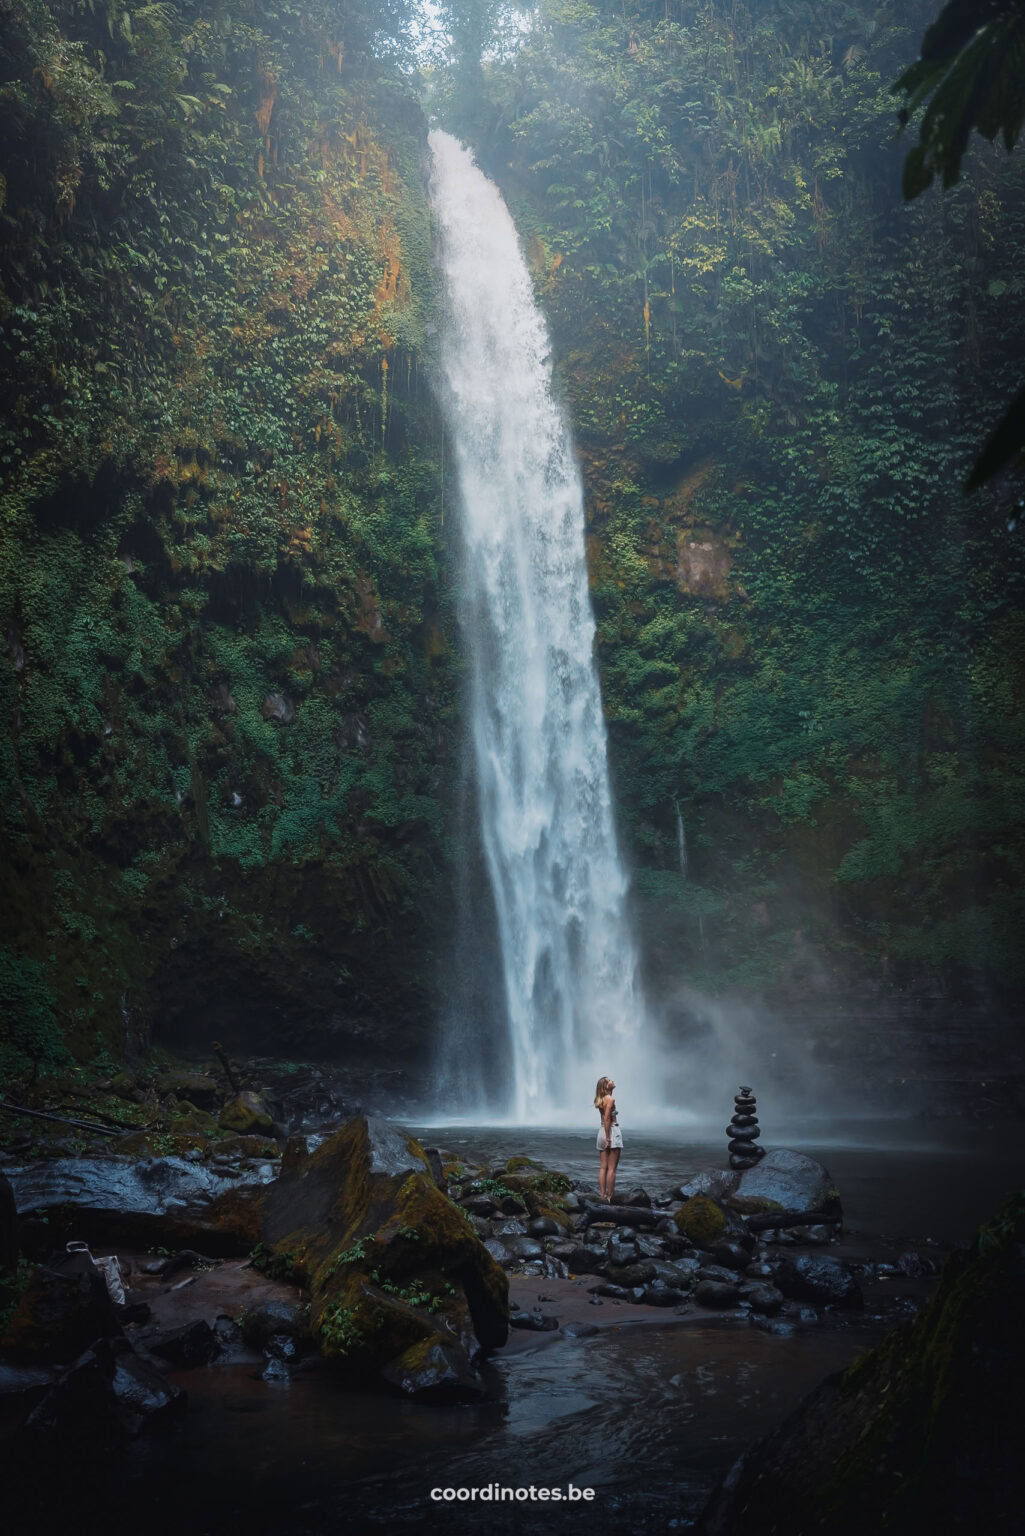 Nungnung waterfall in Bali